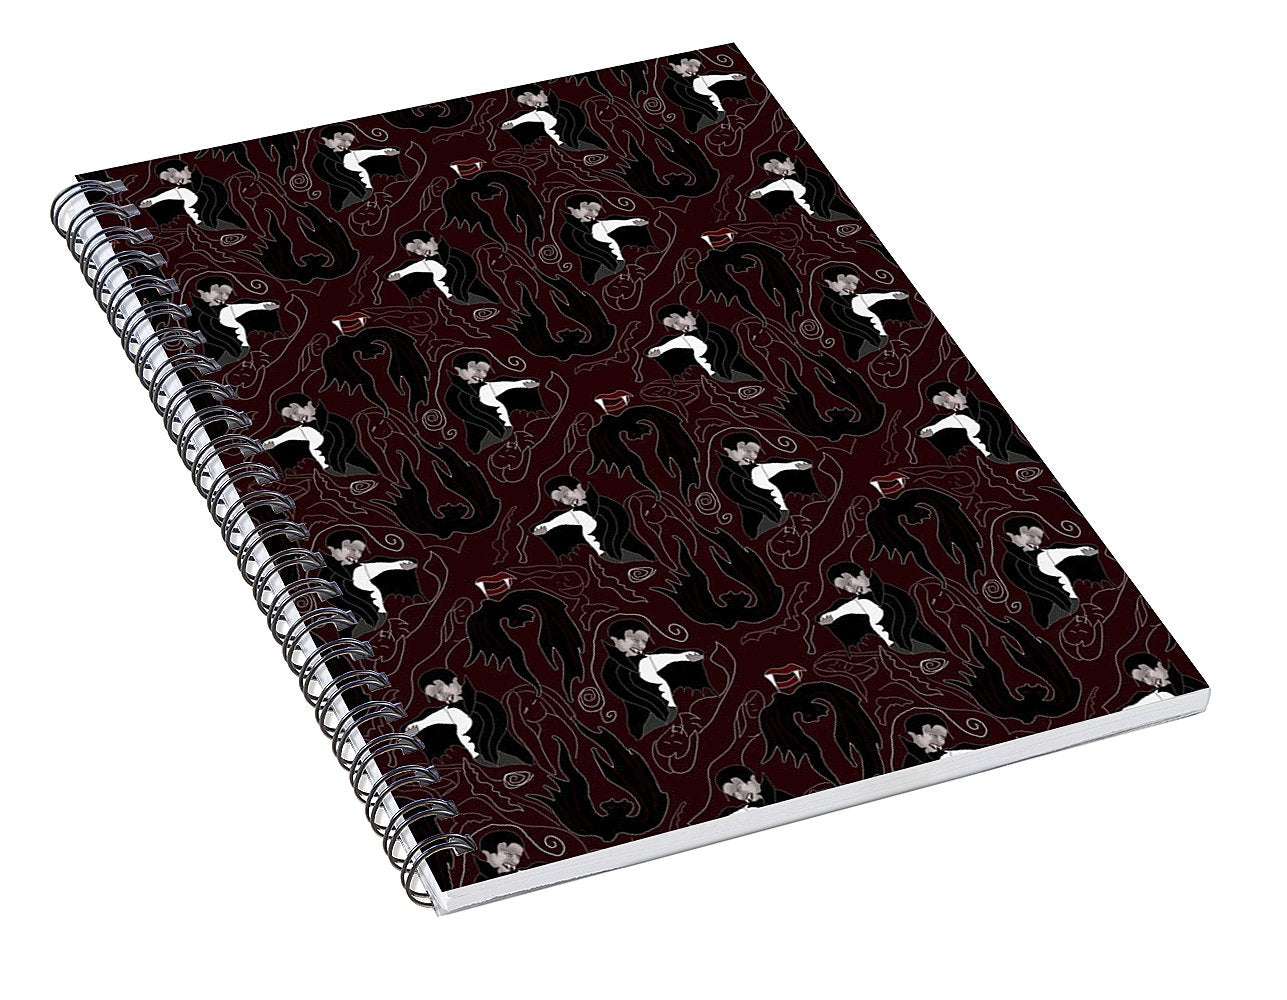 Vampire Pattern - Spiral Notebook